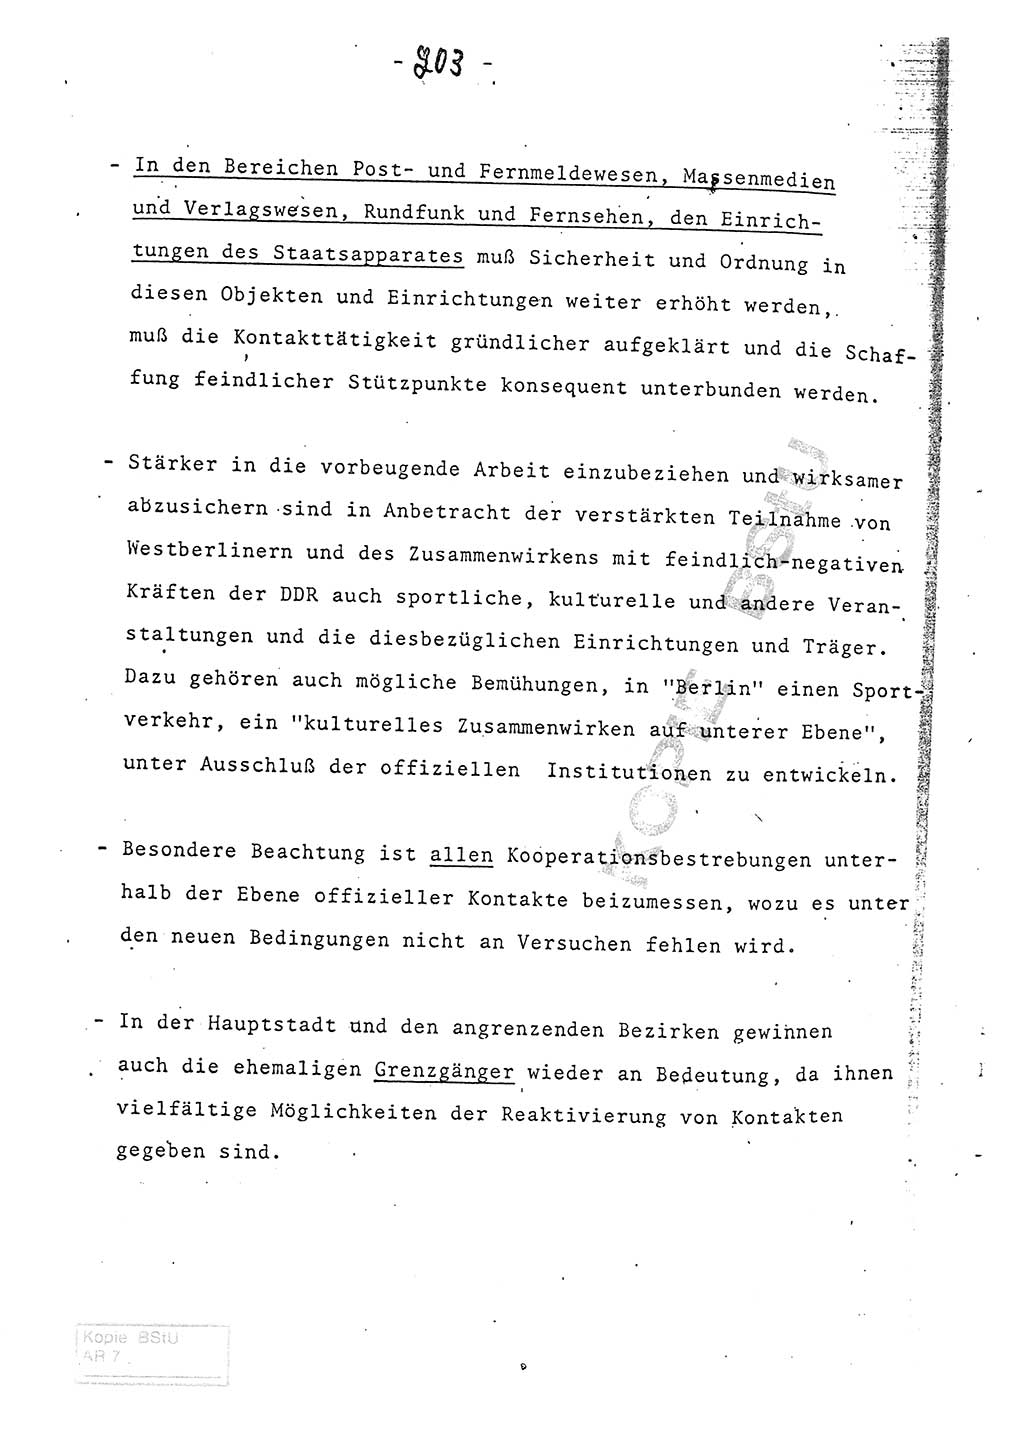 Referat (Entwurf) des Genossen Minister (Generaloberst Erich Mielke) auf der Dienstkonferenz 1972, Ministerium für Staatssicherheit (MfS) [Deutsche Demokratische Republik (DDR)], Der Minister, Geheime Verschlußsache (GVS) 008-150/72, Berlin 25.2.1972, Seite 203 (Ref. Entw. DK MfS DDR Min. GVS 008-150/72 1972, S. 203)